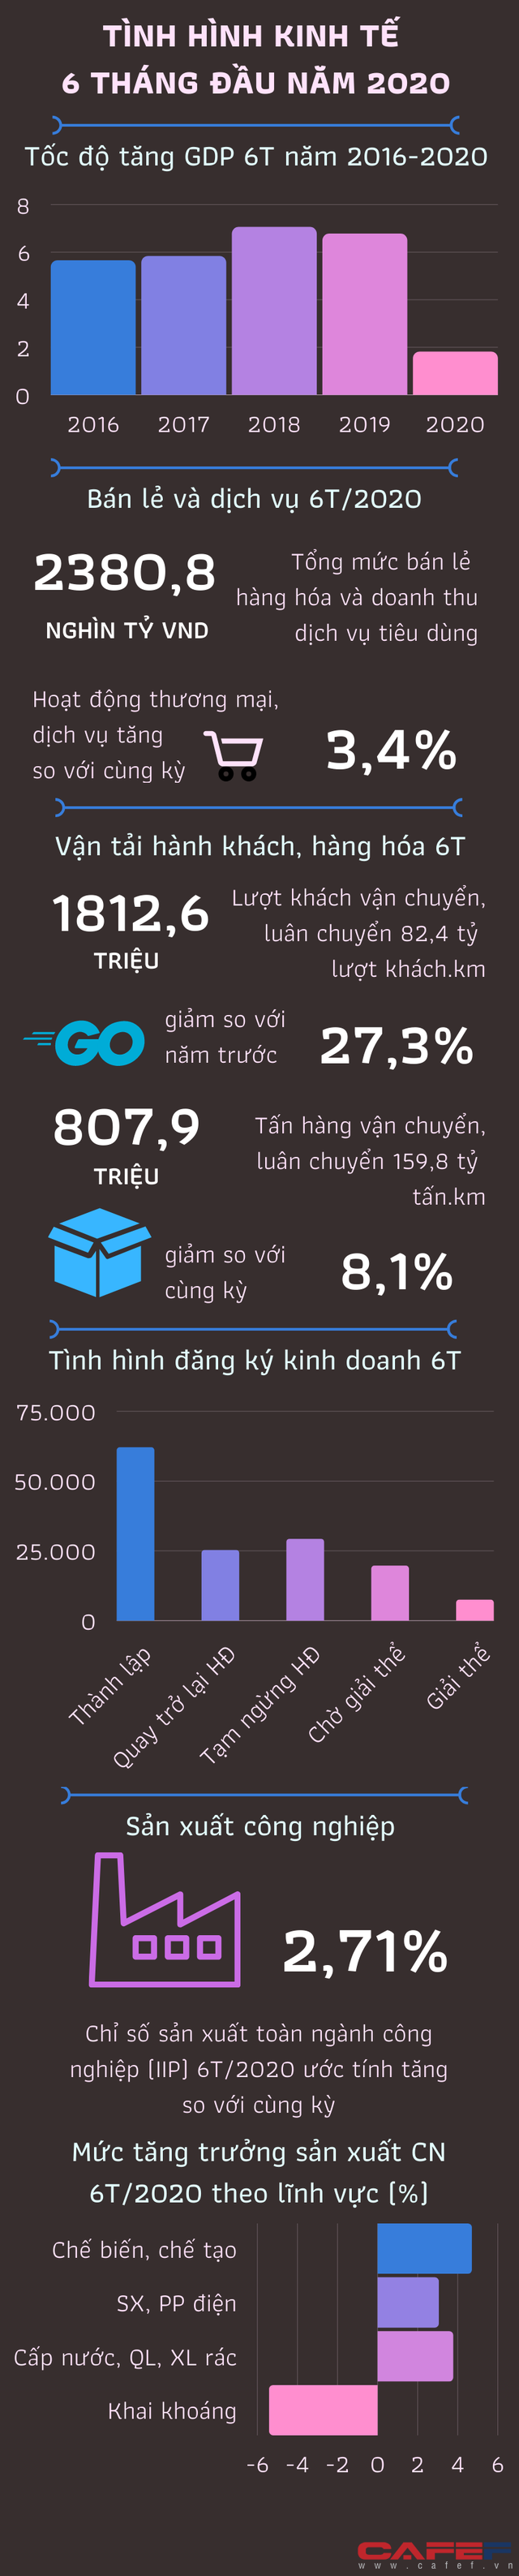 [Infographic] Tình hình kinh tế Việt Nam 6 tháng đầu năm qua những con số - Ảnh 1.